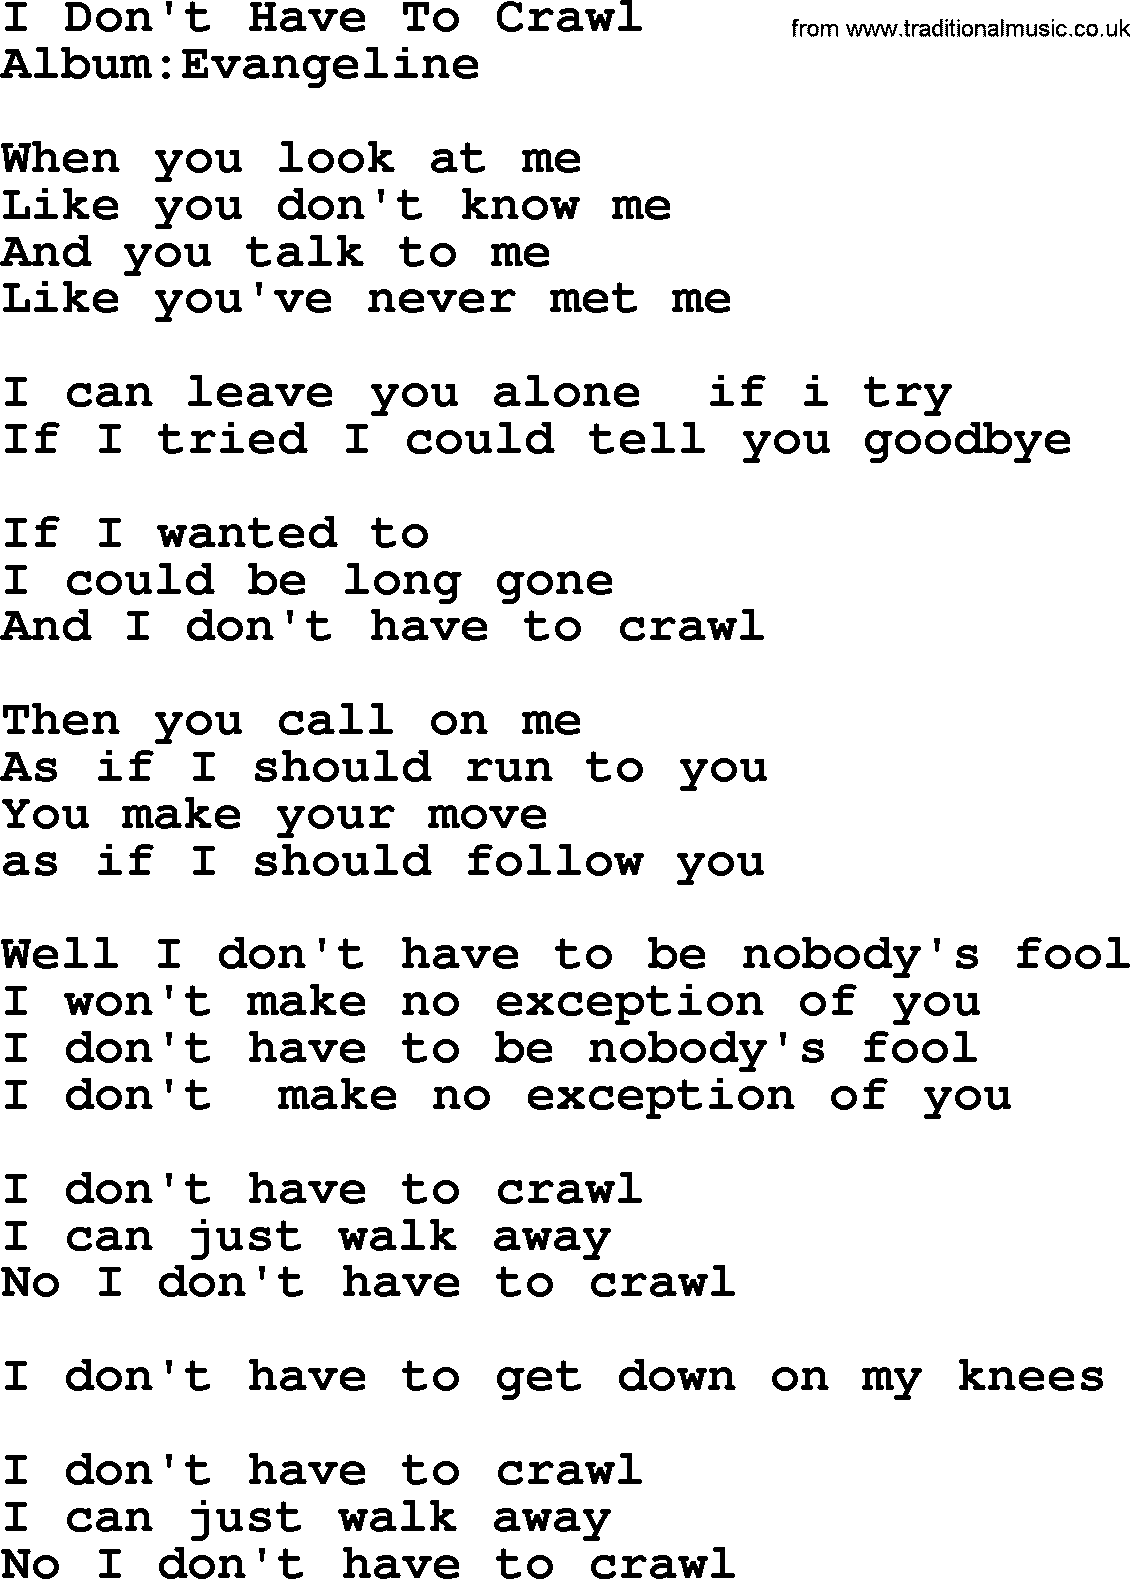 Emmylou Harris song: I Don't Have To Crawl lyrics